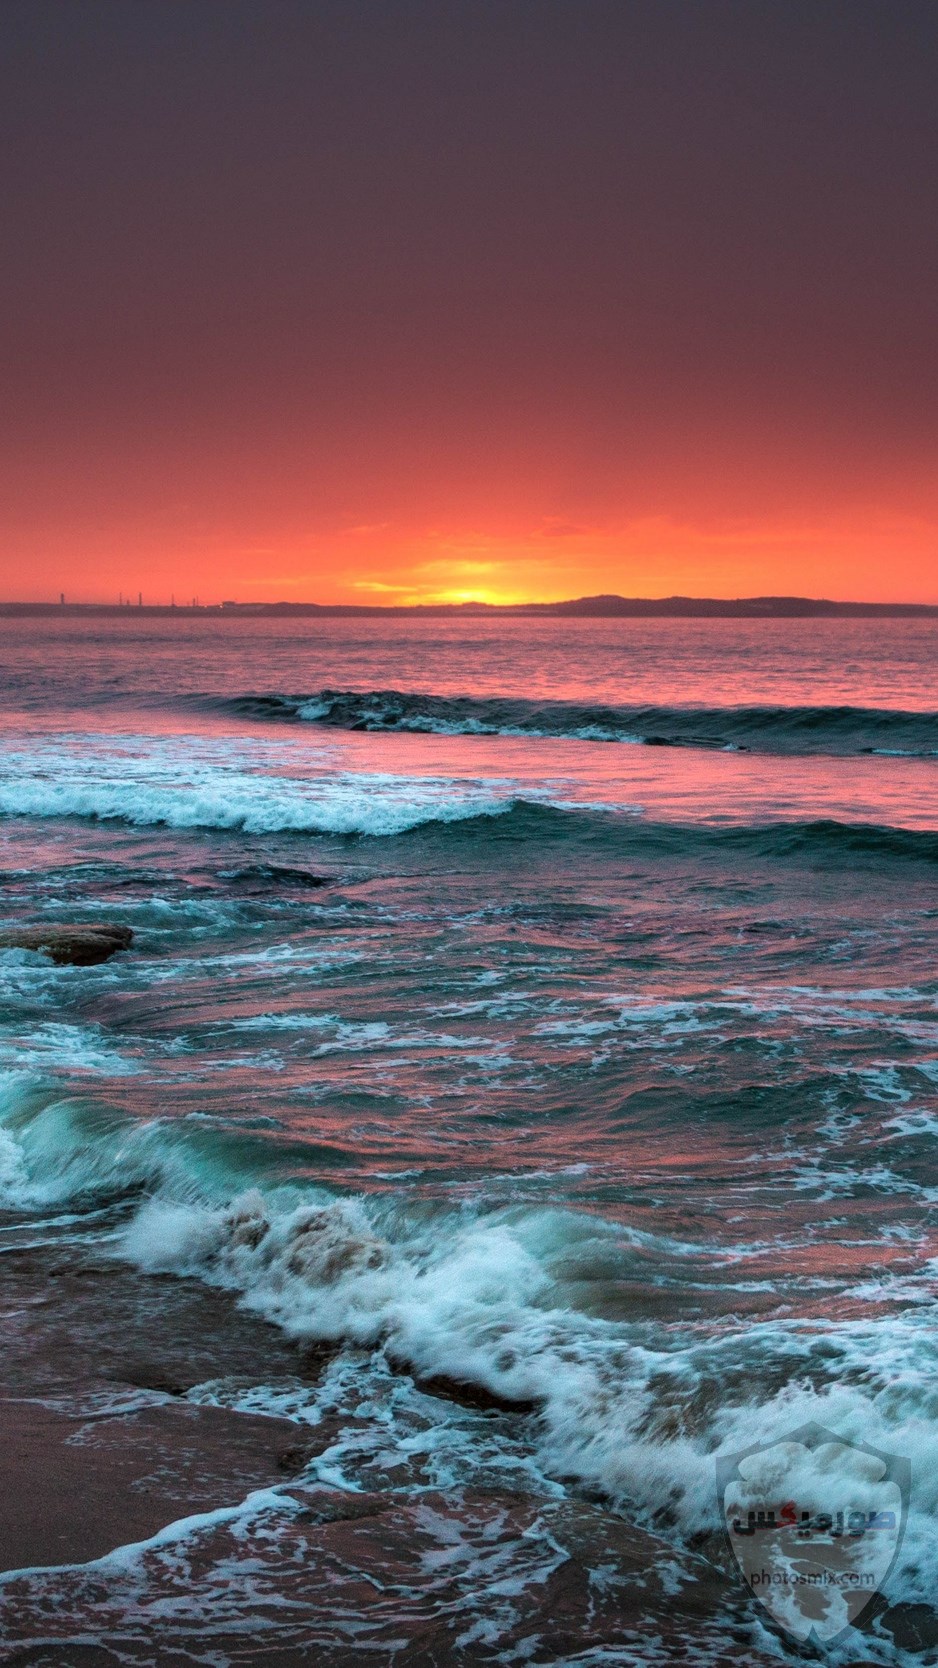 صور بحر وشاطئ صور وخلفيات بحور وشواطئ جميلة اجمل خلفيات بحار جودة عالية 27